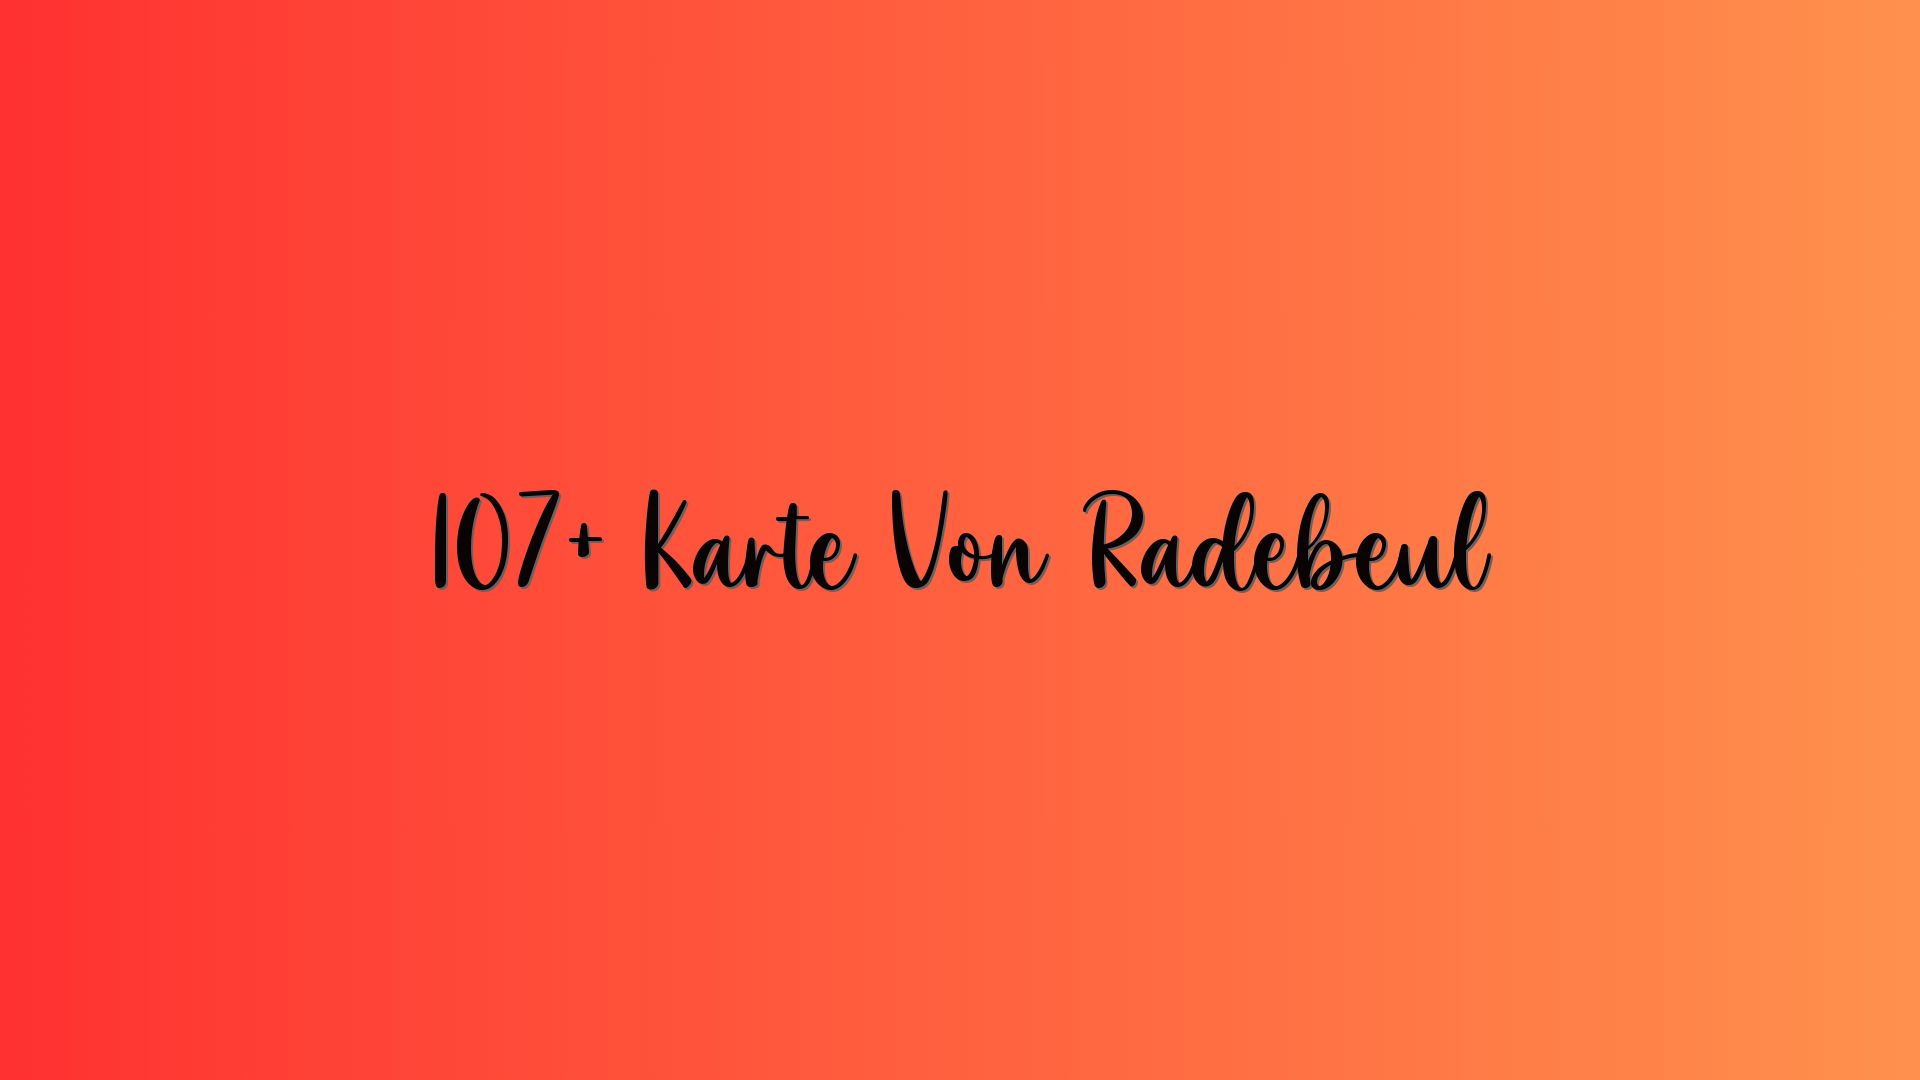 107+ Karte Von Radebeul